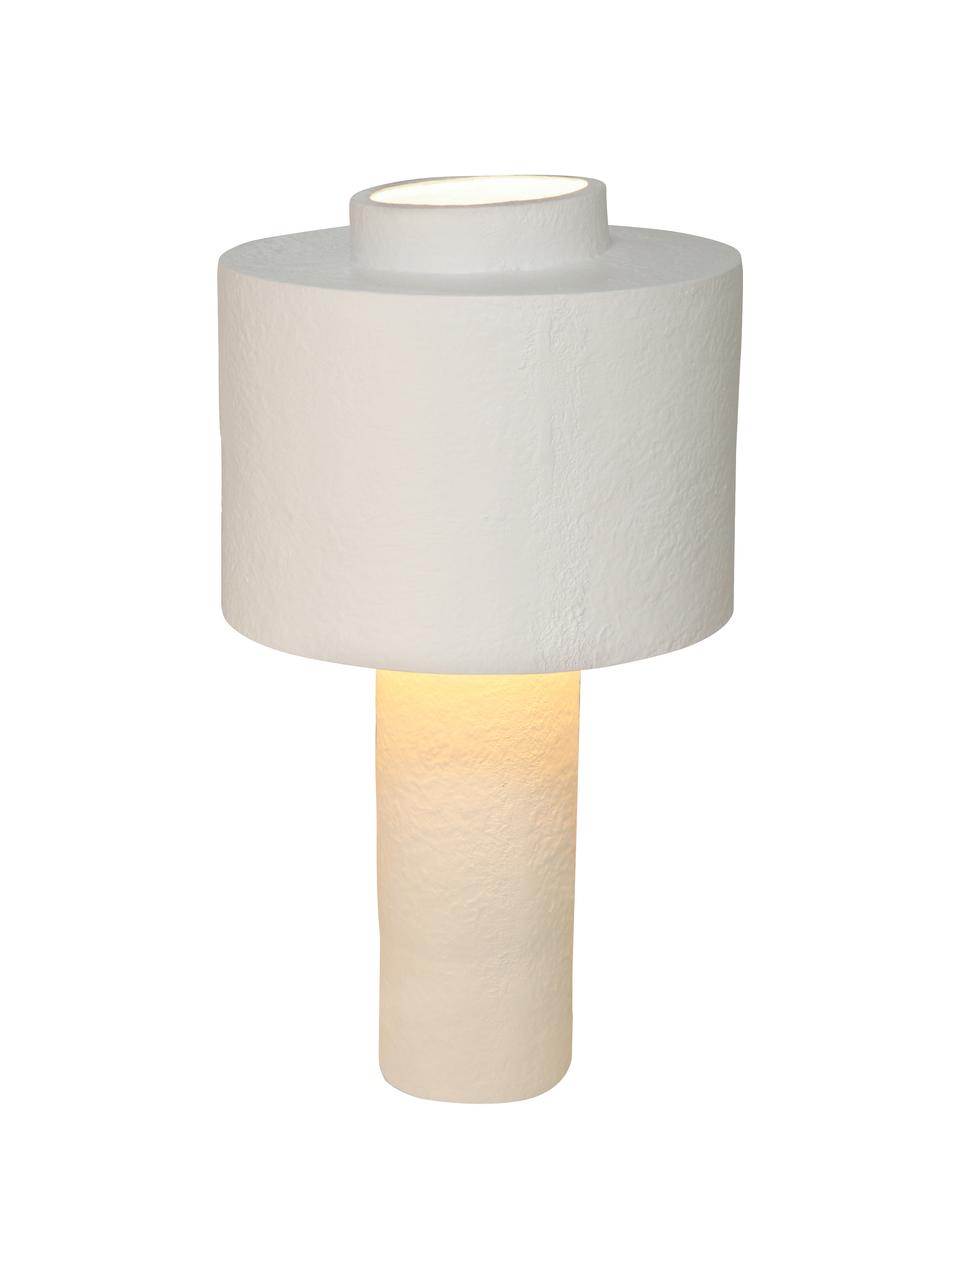 Dimmbare Tischlampe Gesso, Lampenschirm: Polyresin, Gesso, Lampenfuß: Polyresin, Gesso, Weiß, Ø 28 x H 51 cm